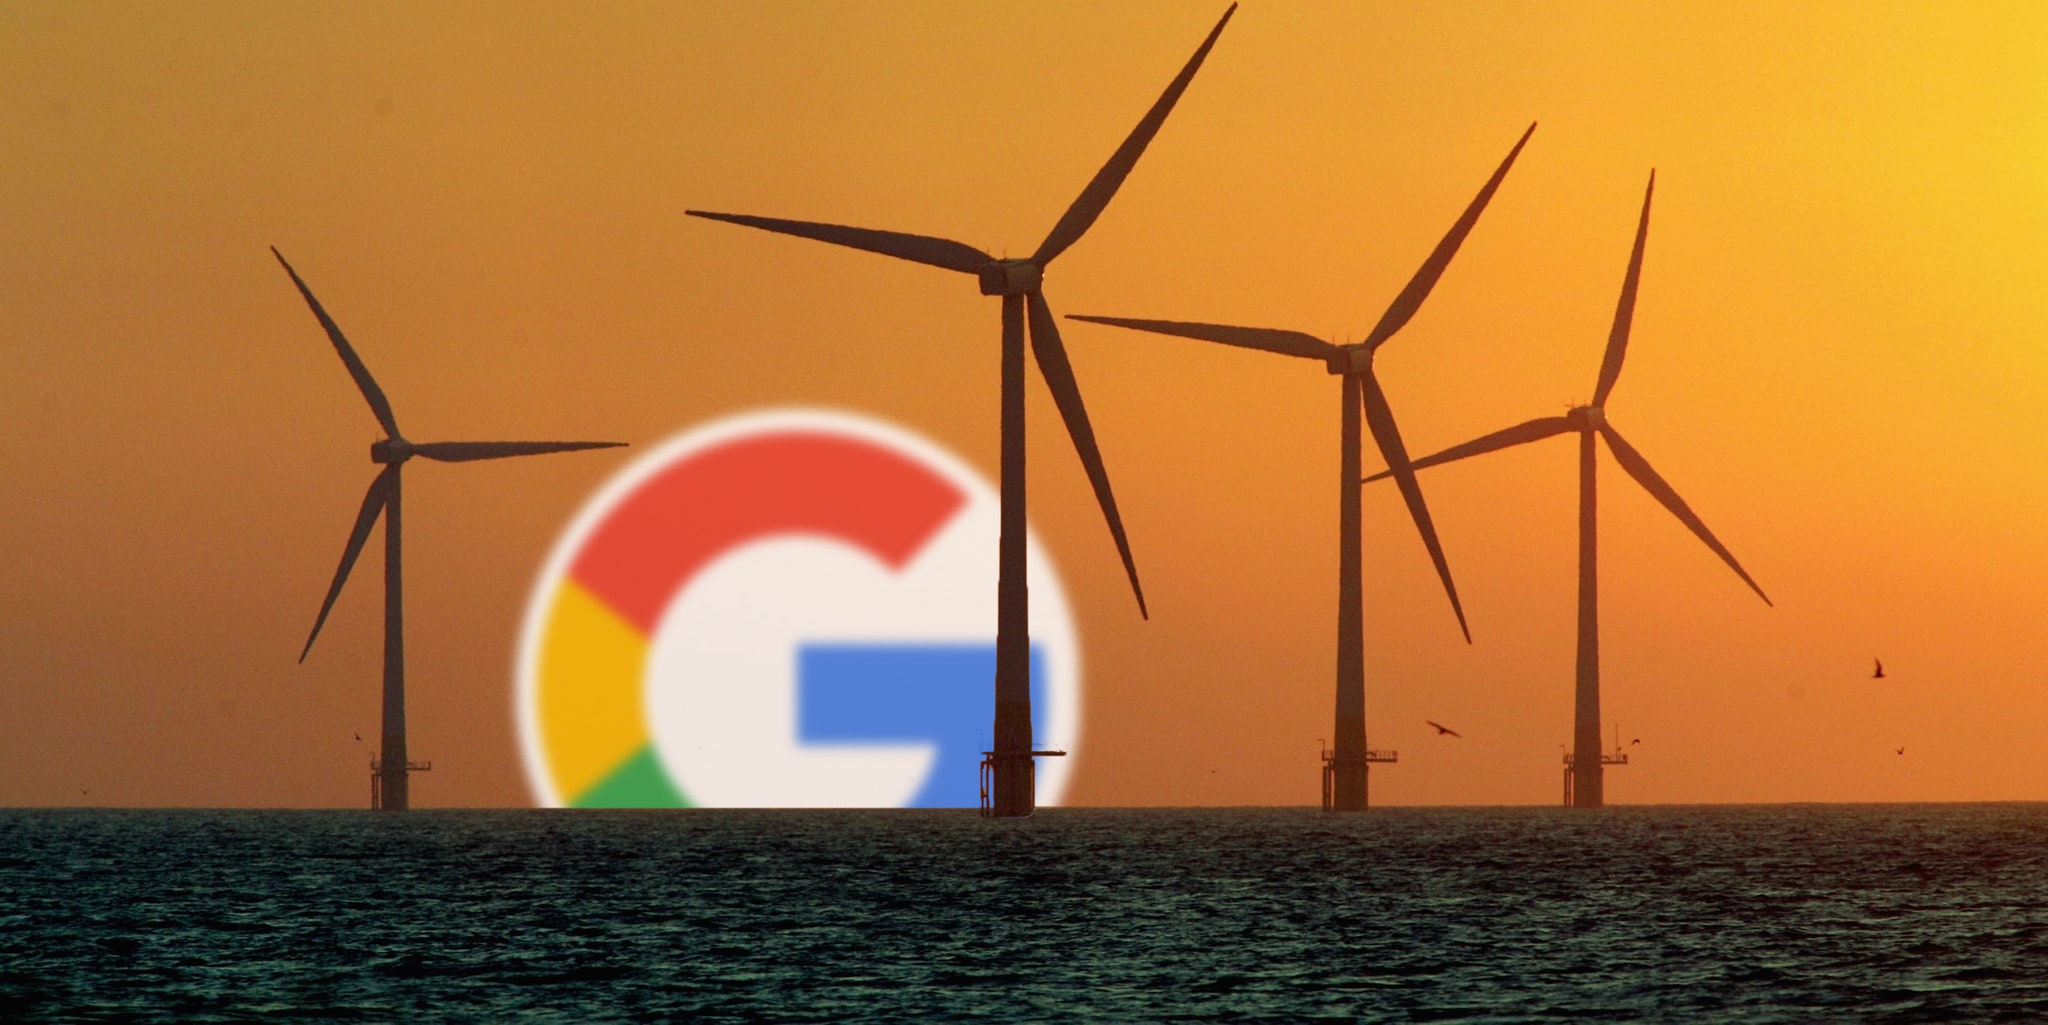 جوجل سوف تضرب رقماً قياسياً باستخدام الطاقة المتجددة في عام 2017